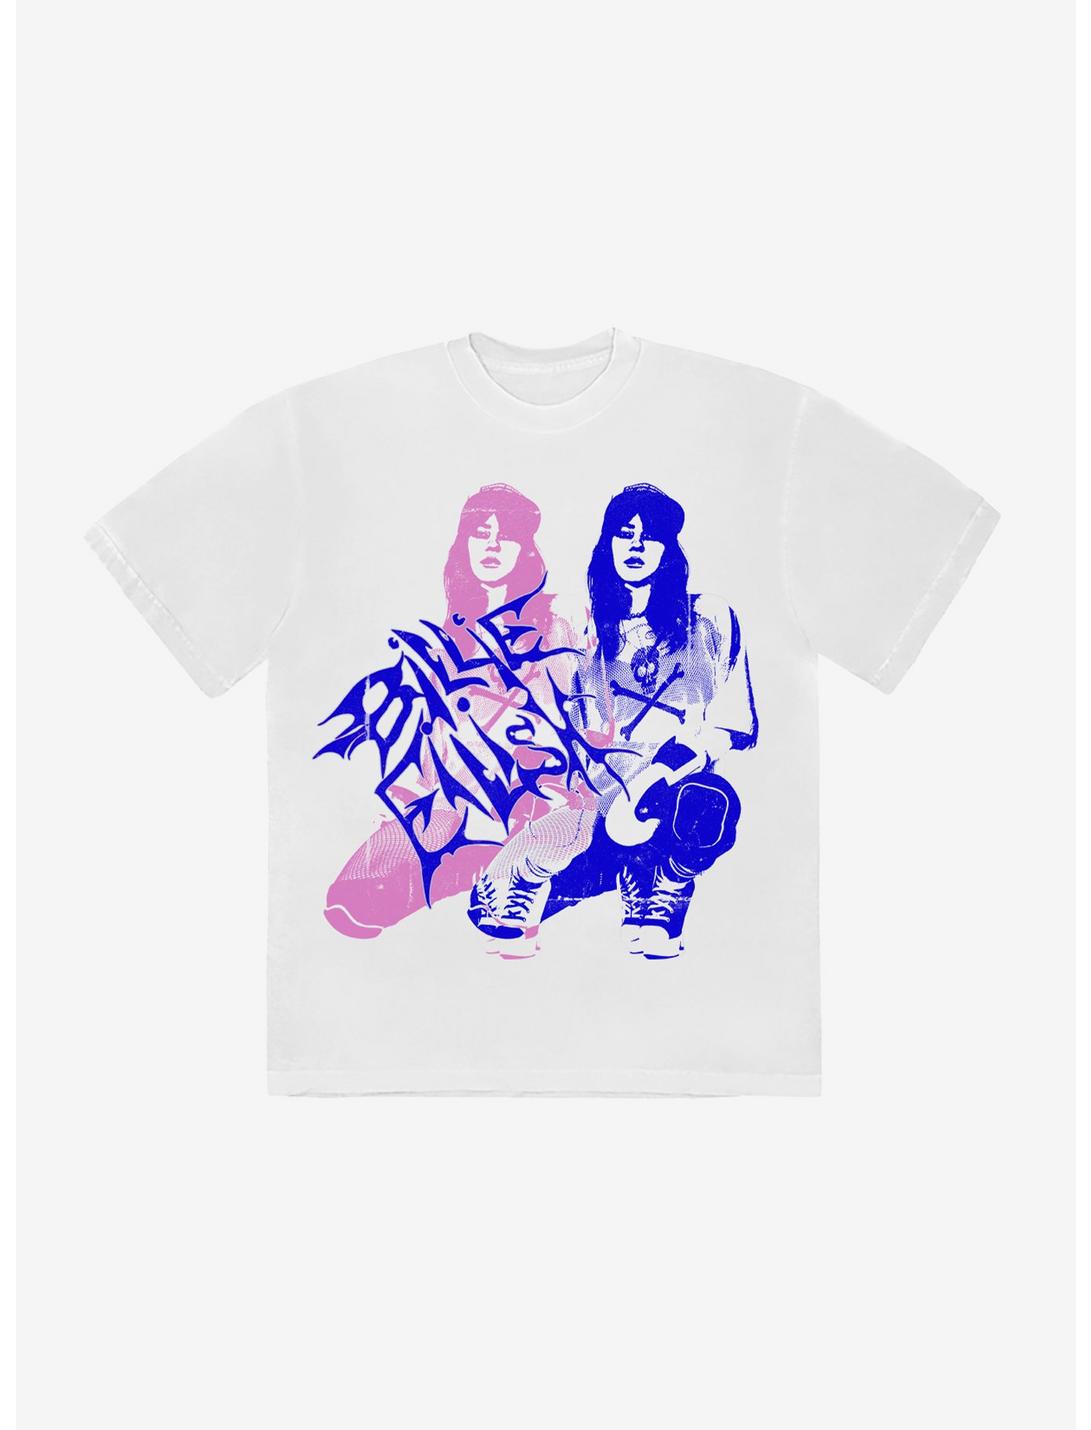 Billie Eilish Pink & Blue Double Boyfriend Fit Girls T-Shirt, BRIGHT WHITE, hi-res